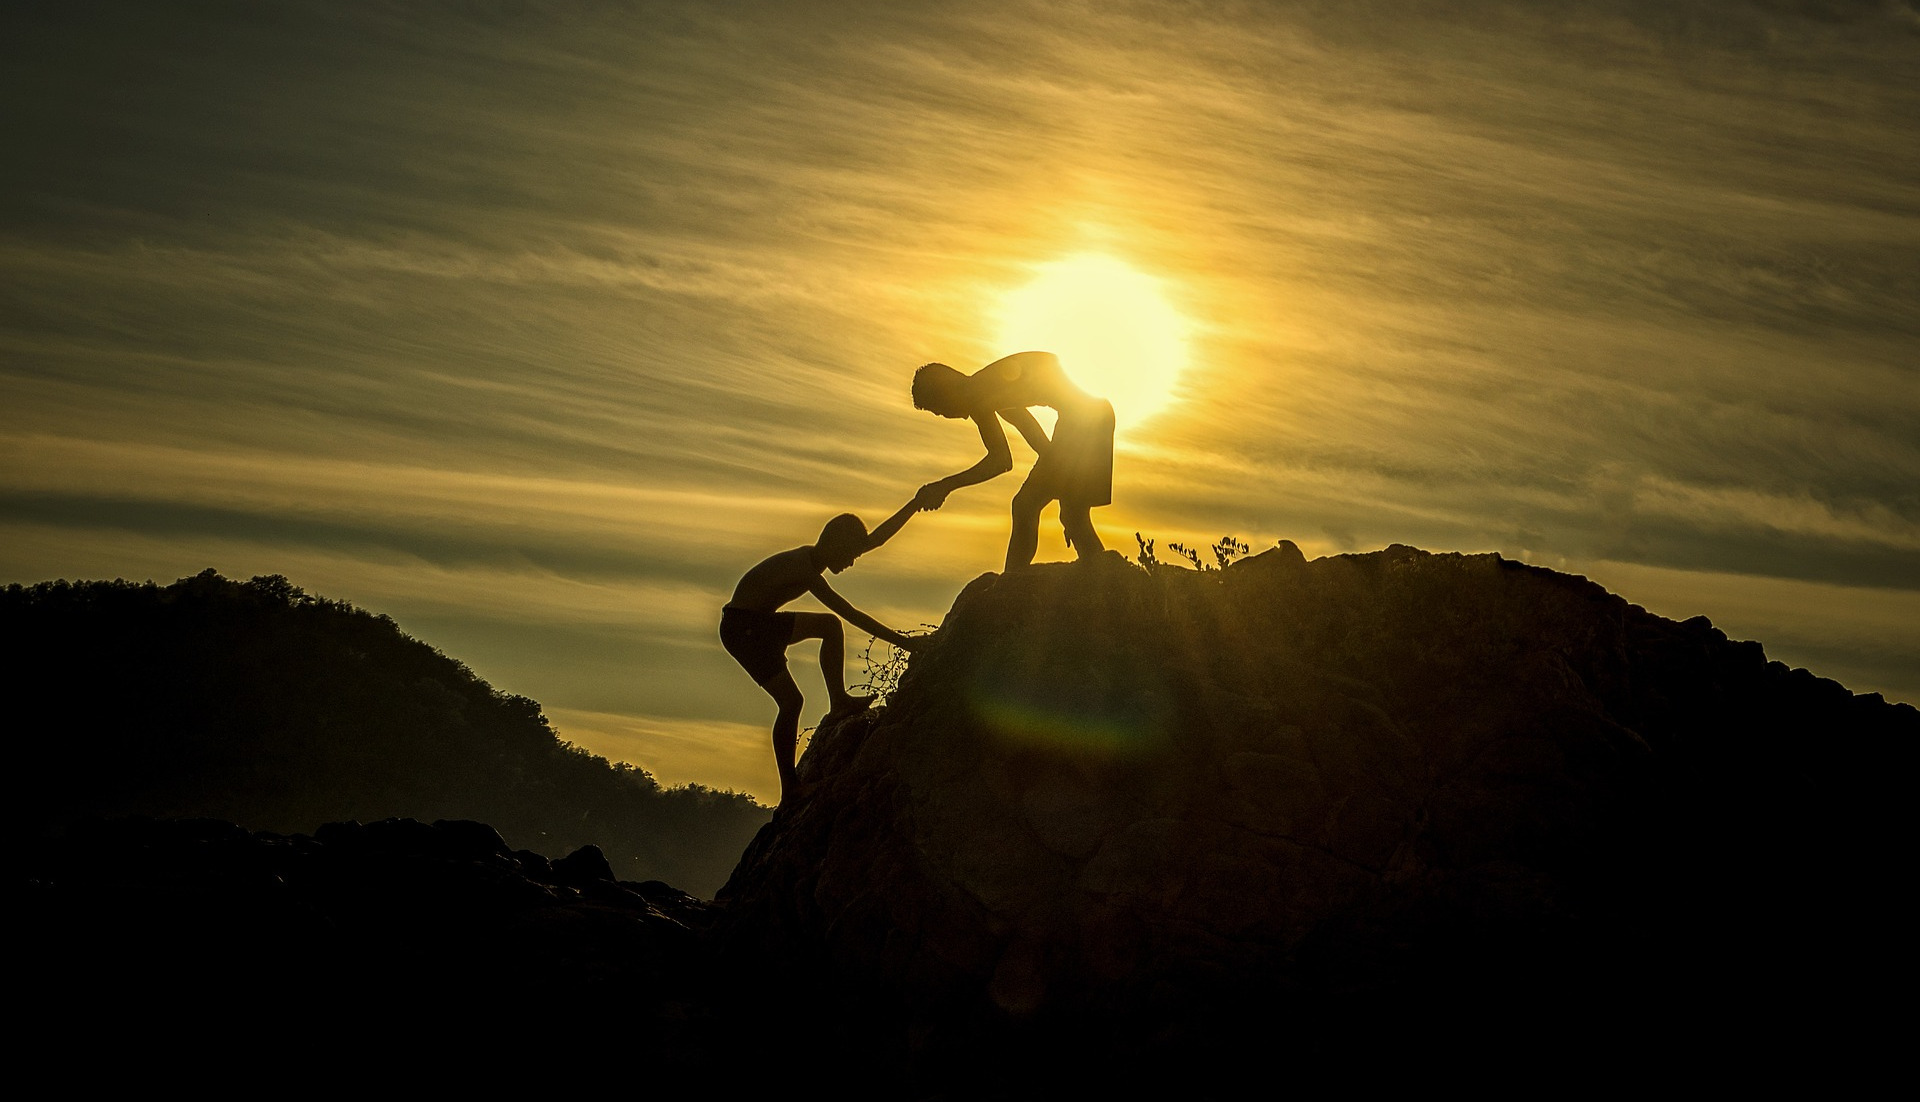 Bild eines Menschen, der einen anderen auf einen Berg hilft als Symbolbild für die Betreuung